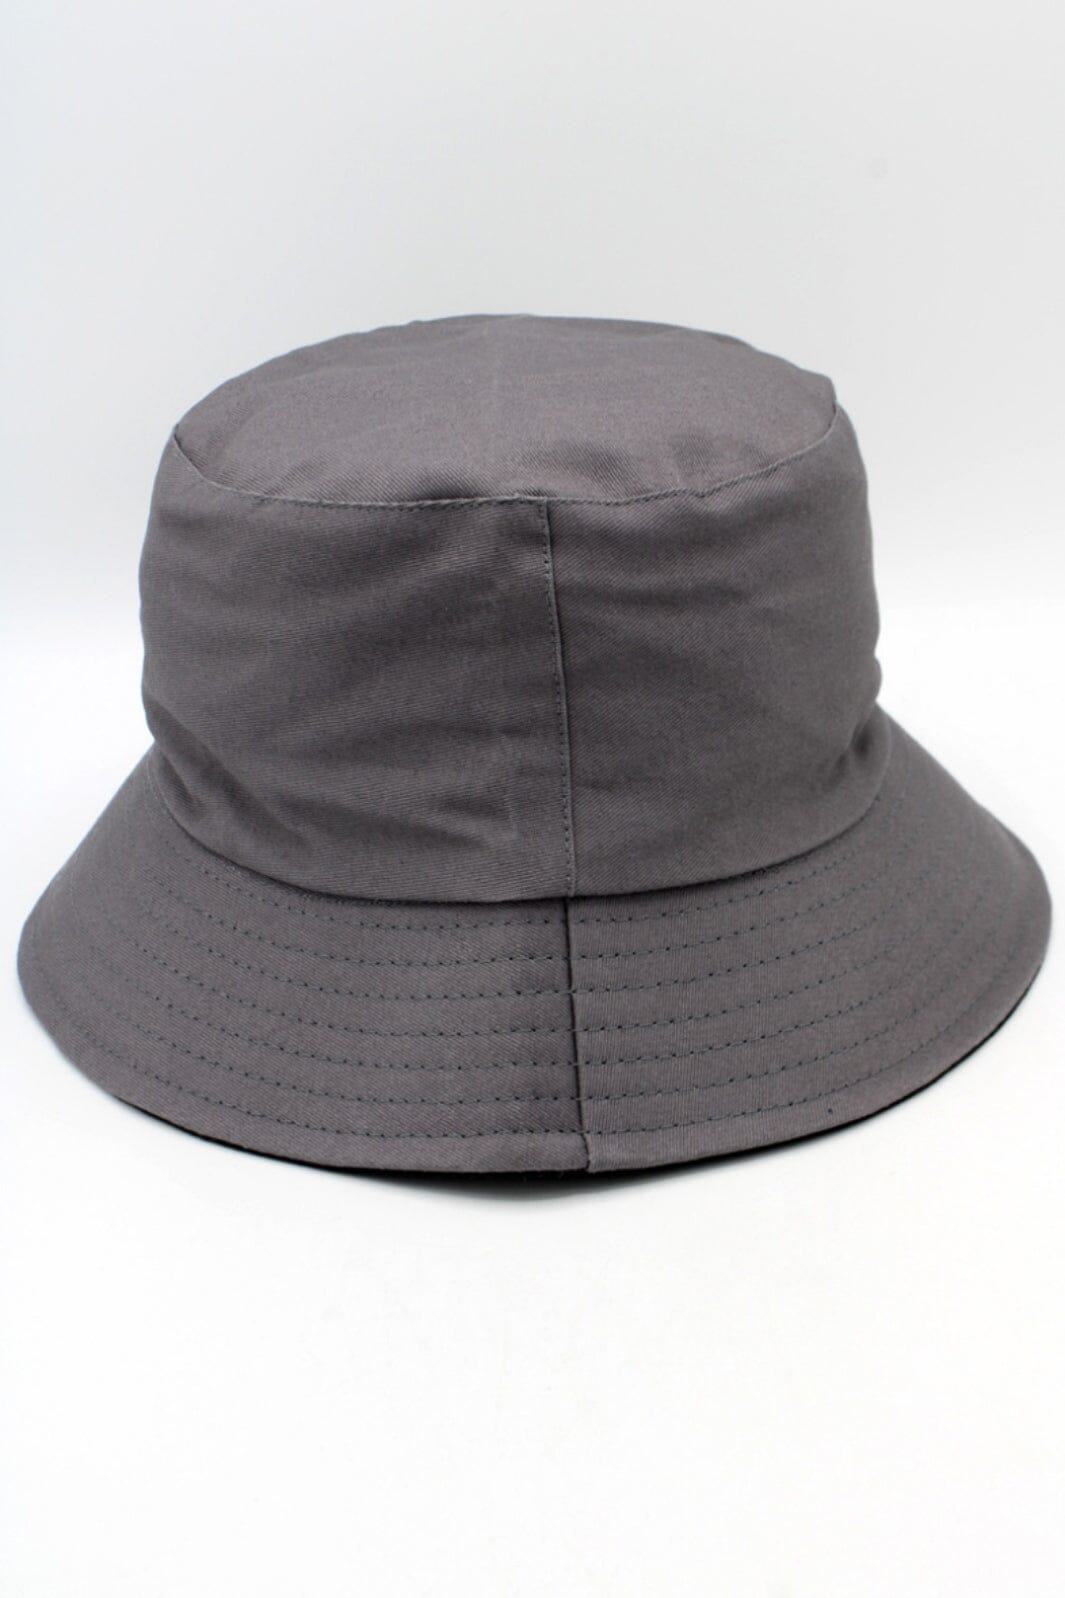 Anobel Copenhagen - Reversible Two-Tone Cotton Bucket Hat 12577 - Dark Gray Hatte 